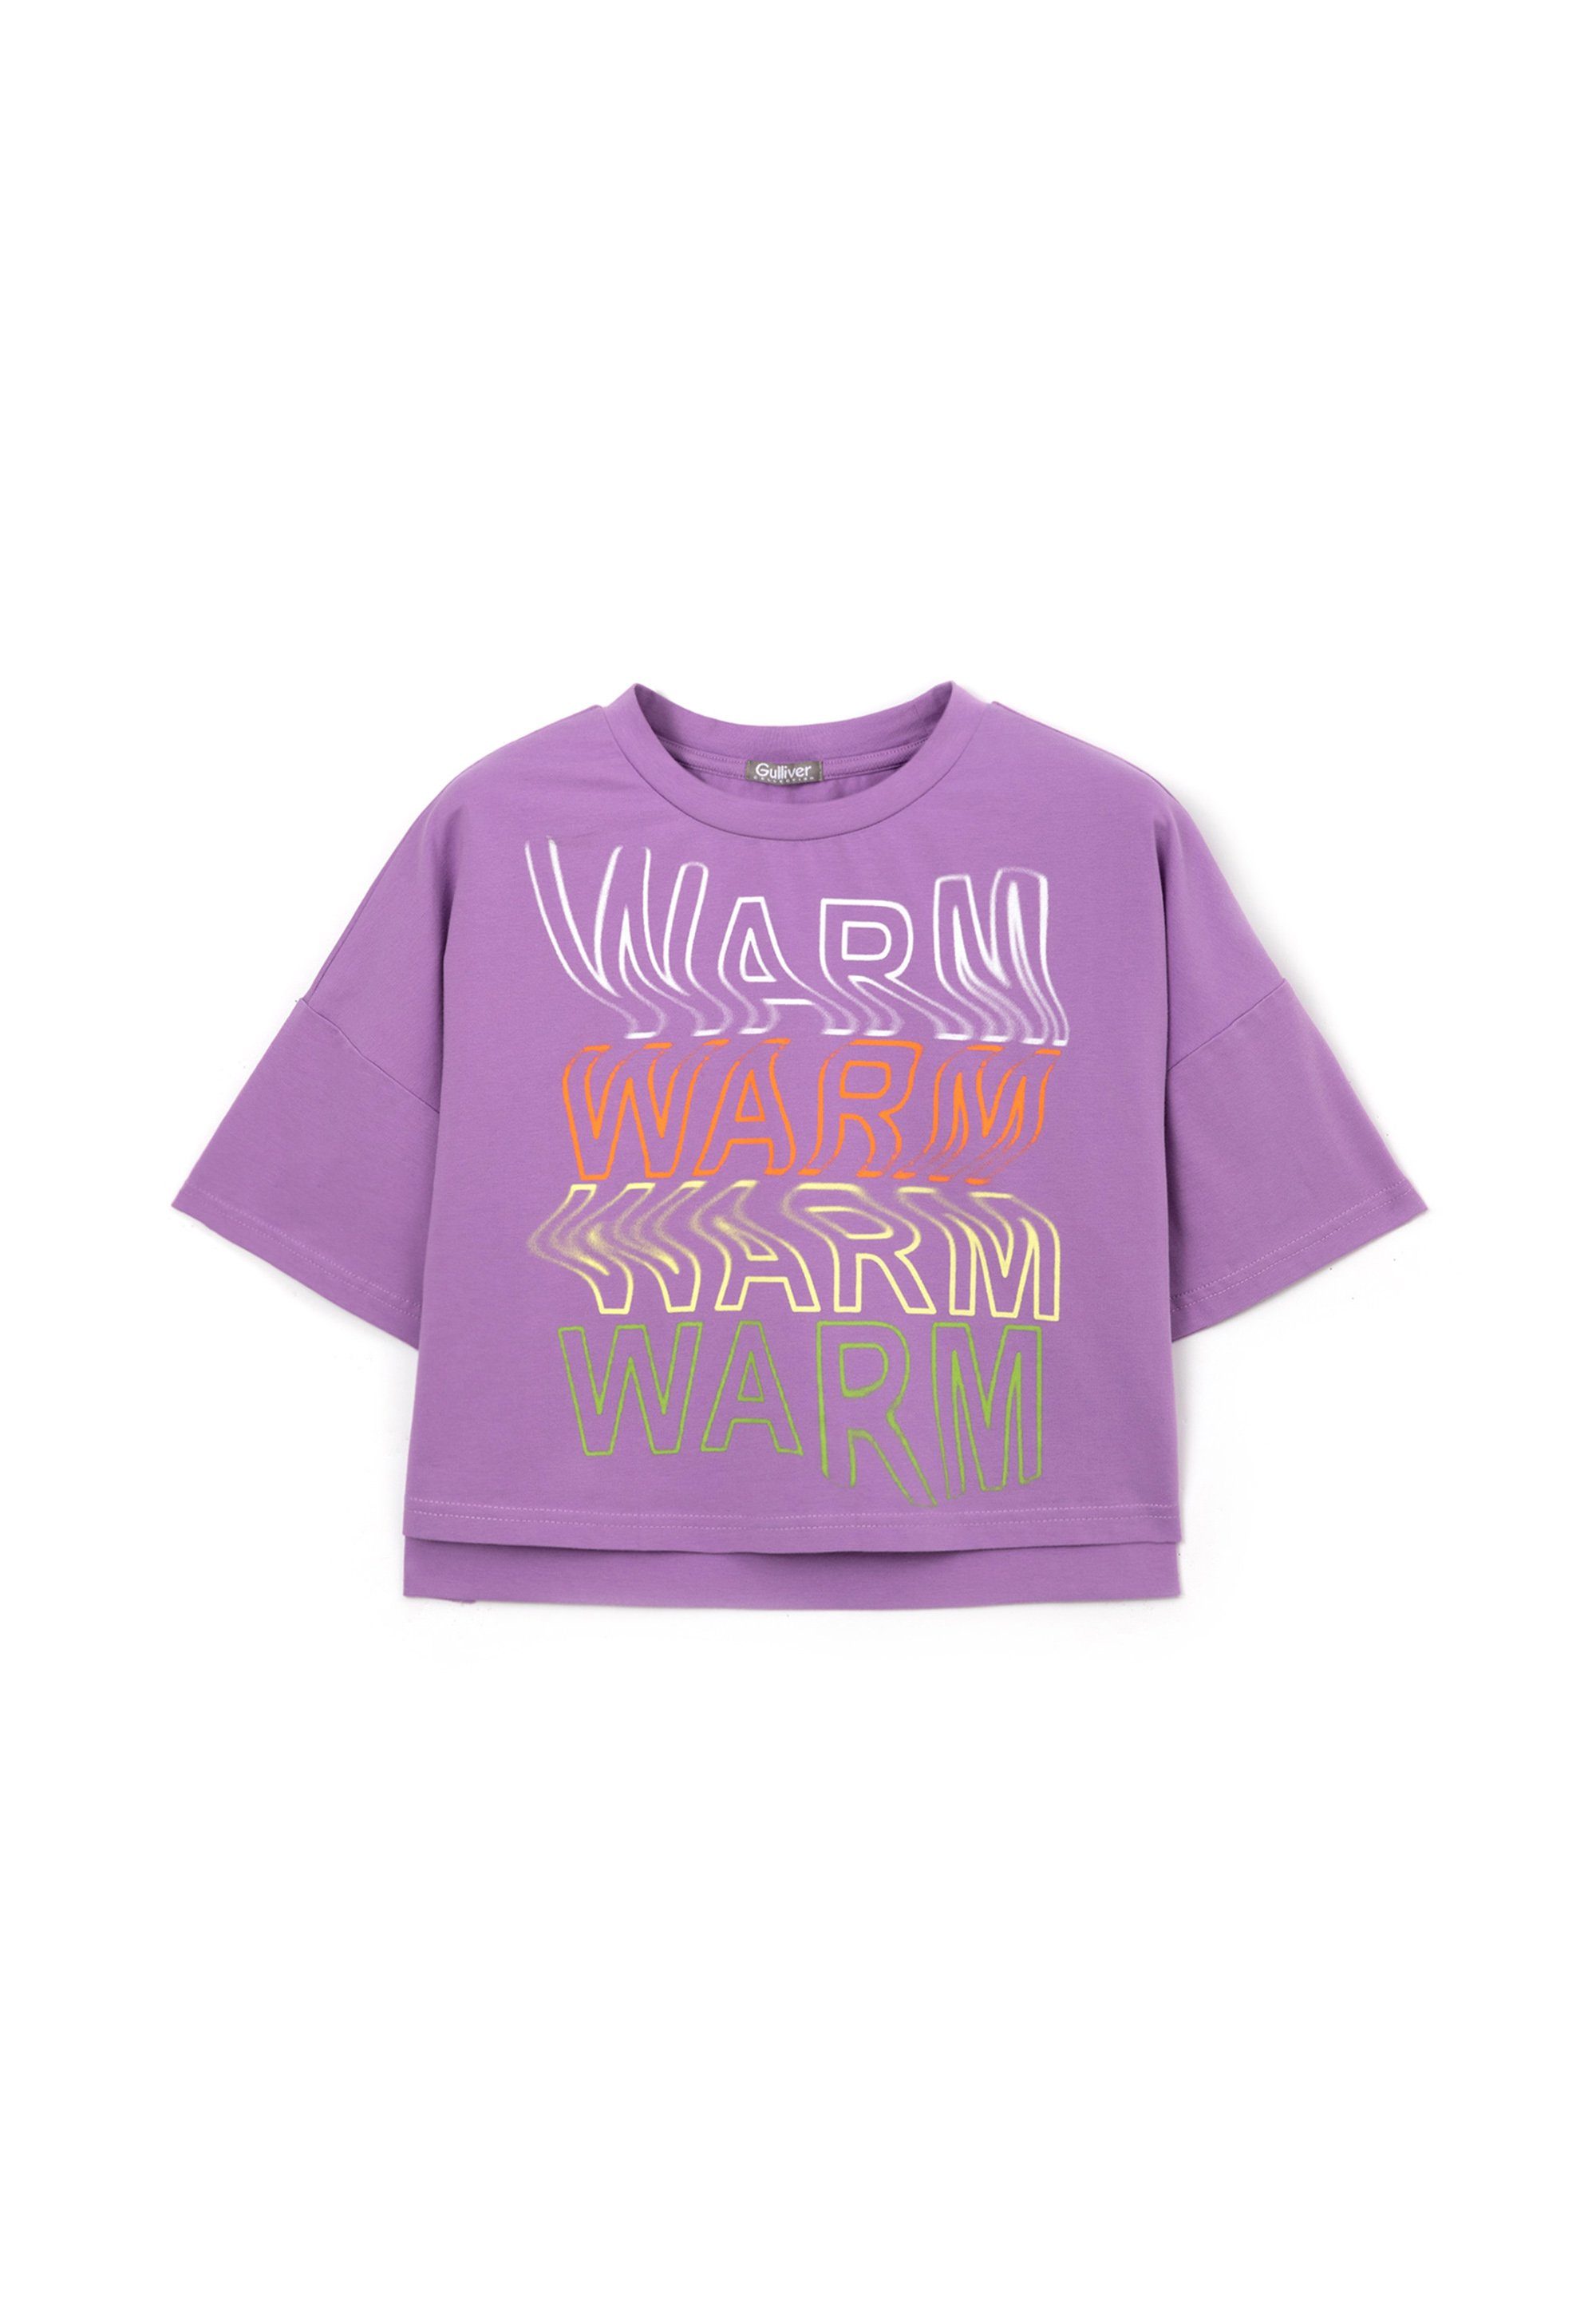 Weiche Stretchanteil Komfo T-Shirt super Prints Baumwollqualität mit Rückseite, Gulliver Front mit und bietet auf trendigen